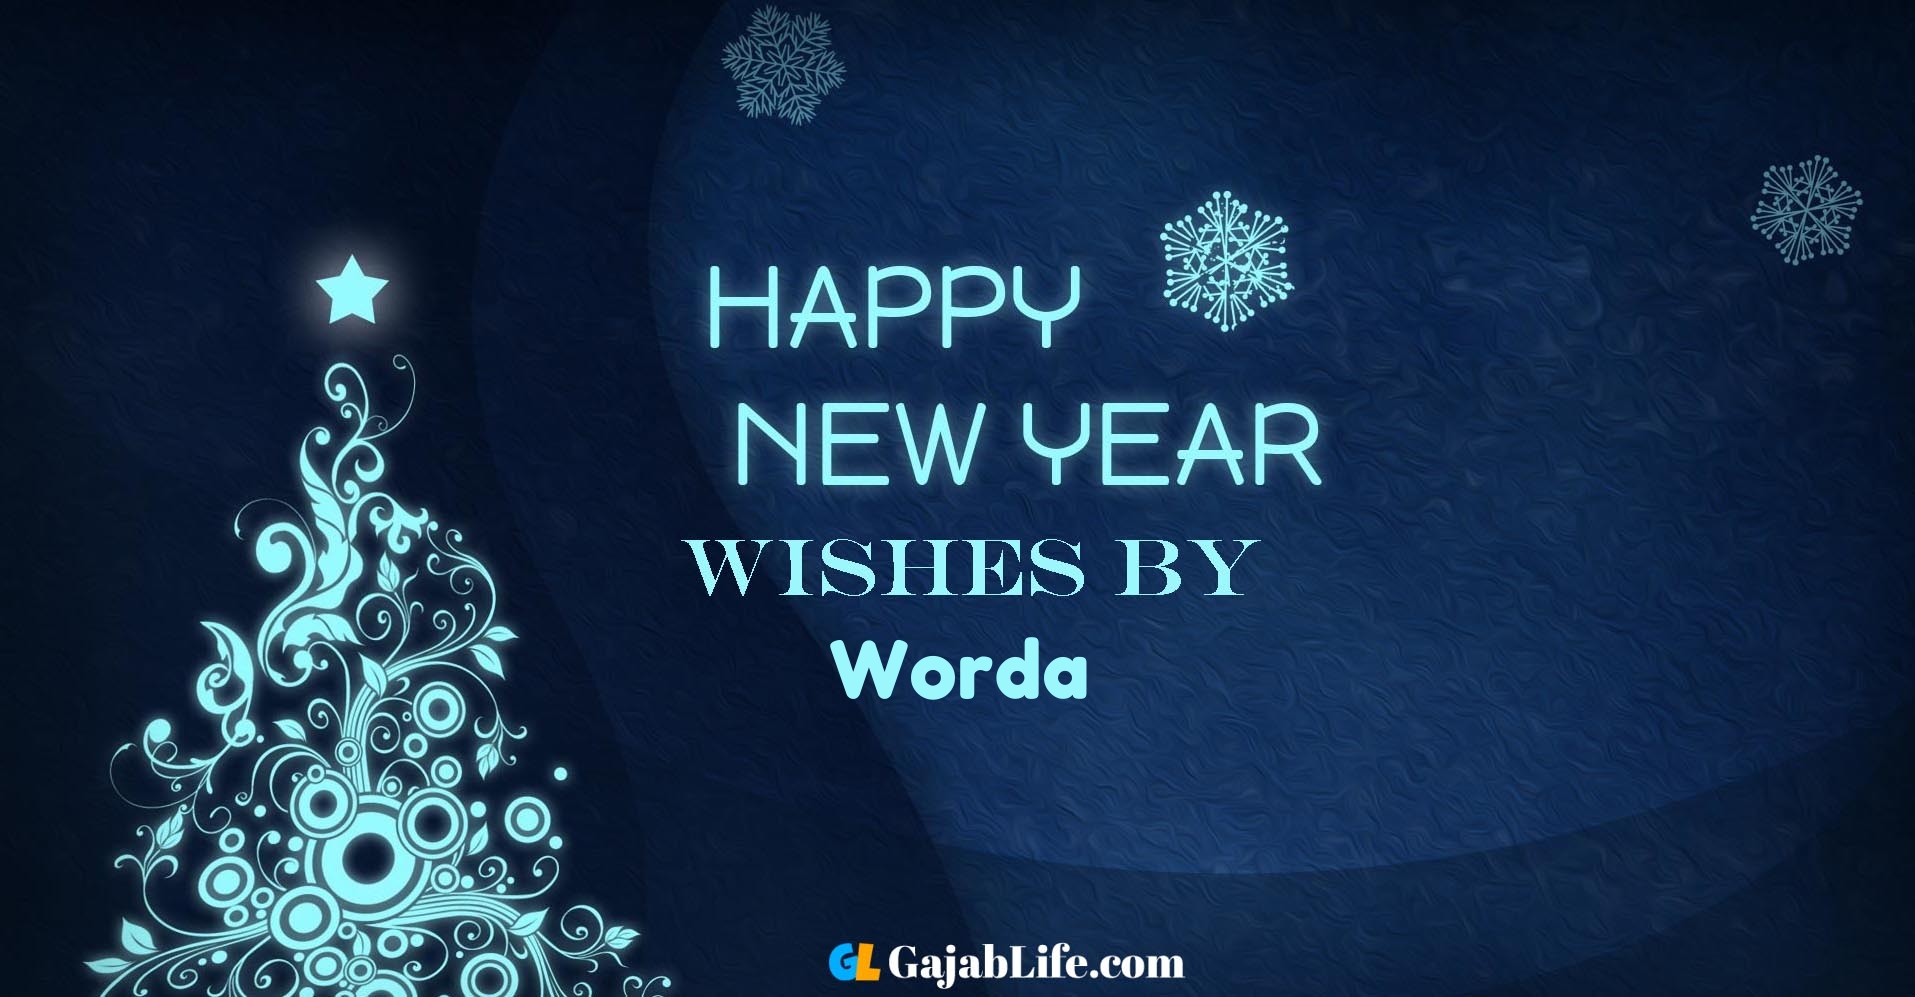 Happy new year wishes worda